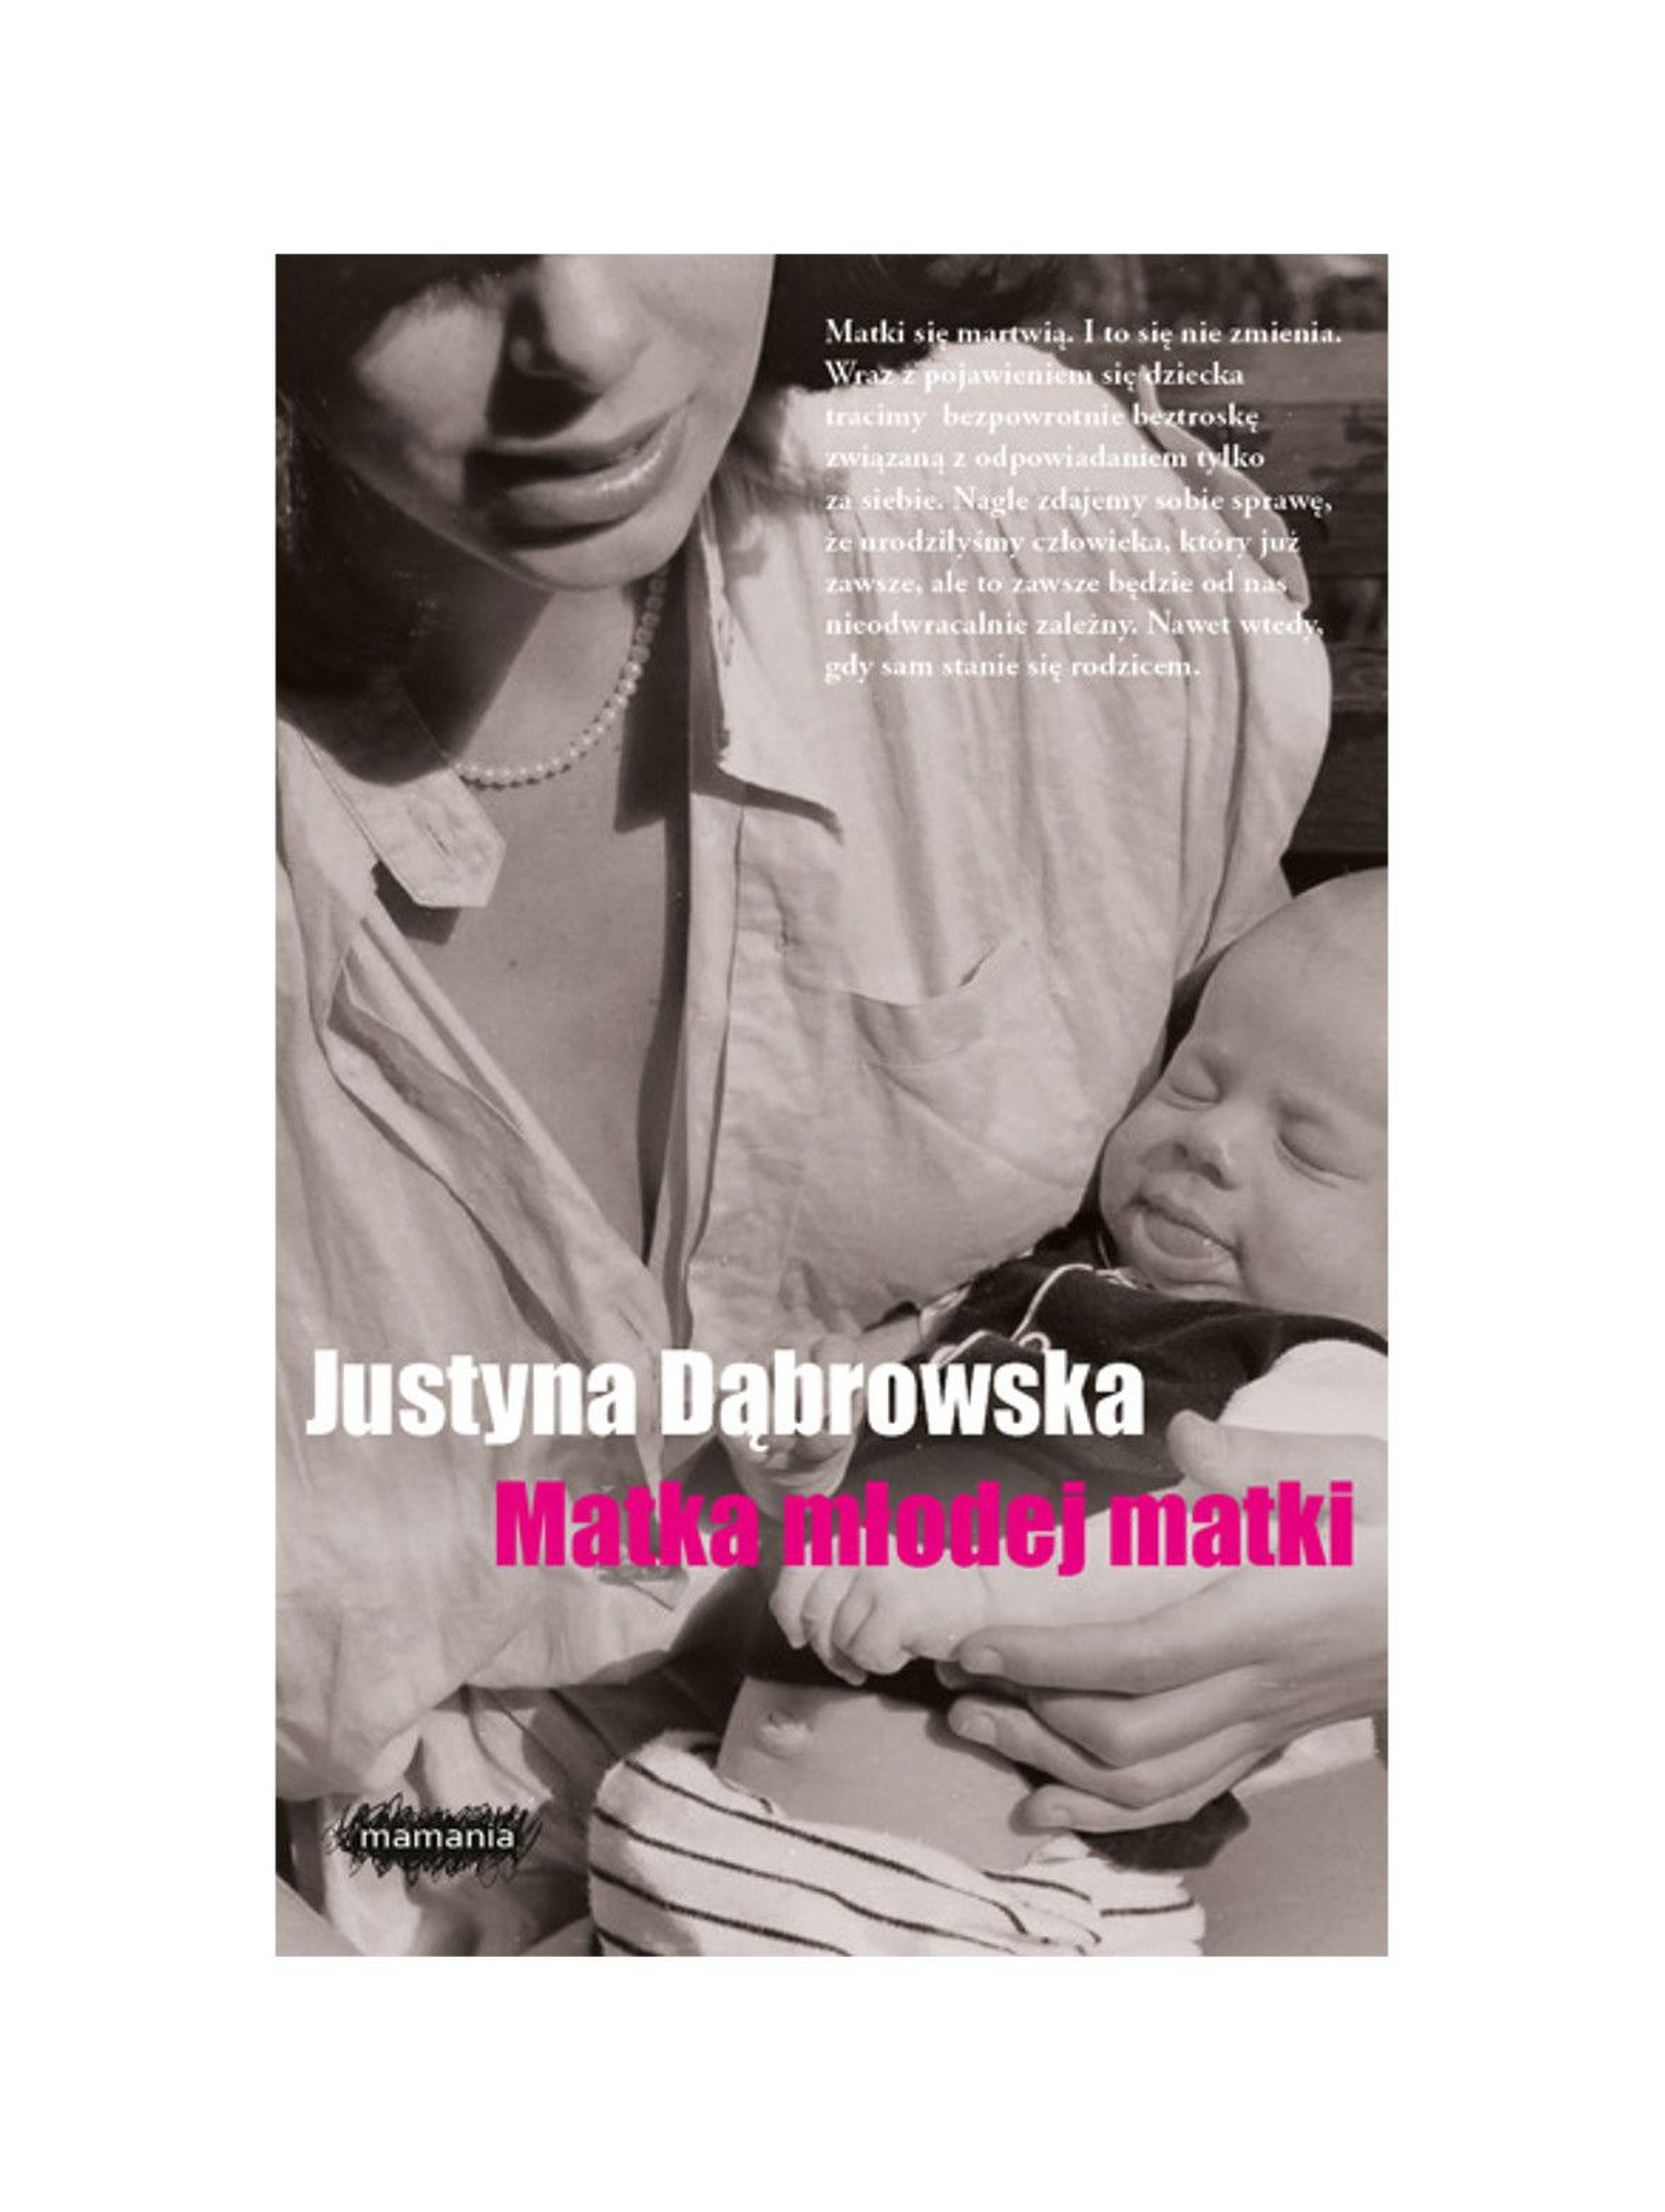 Książka "Matka młodej matki" J. Dąbrowska